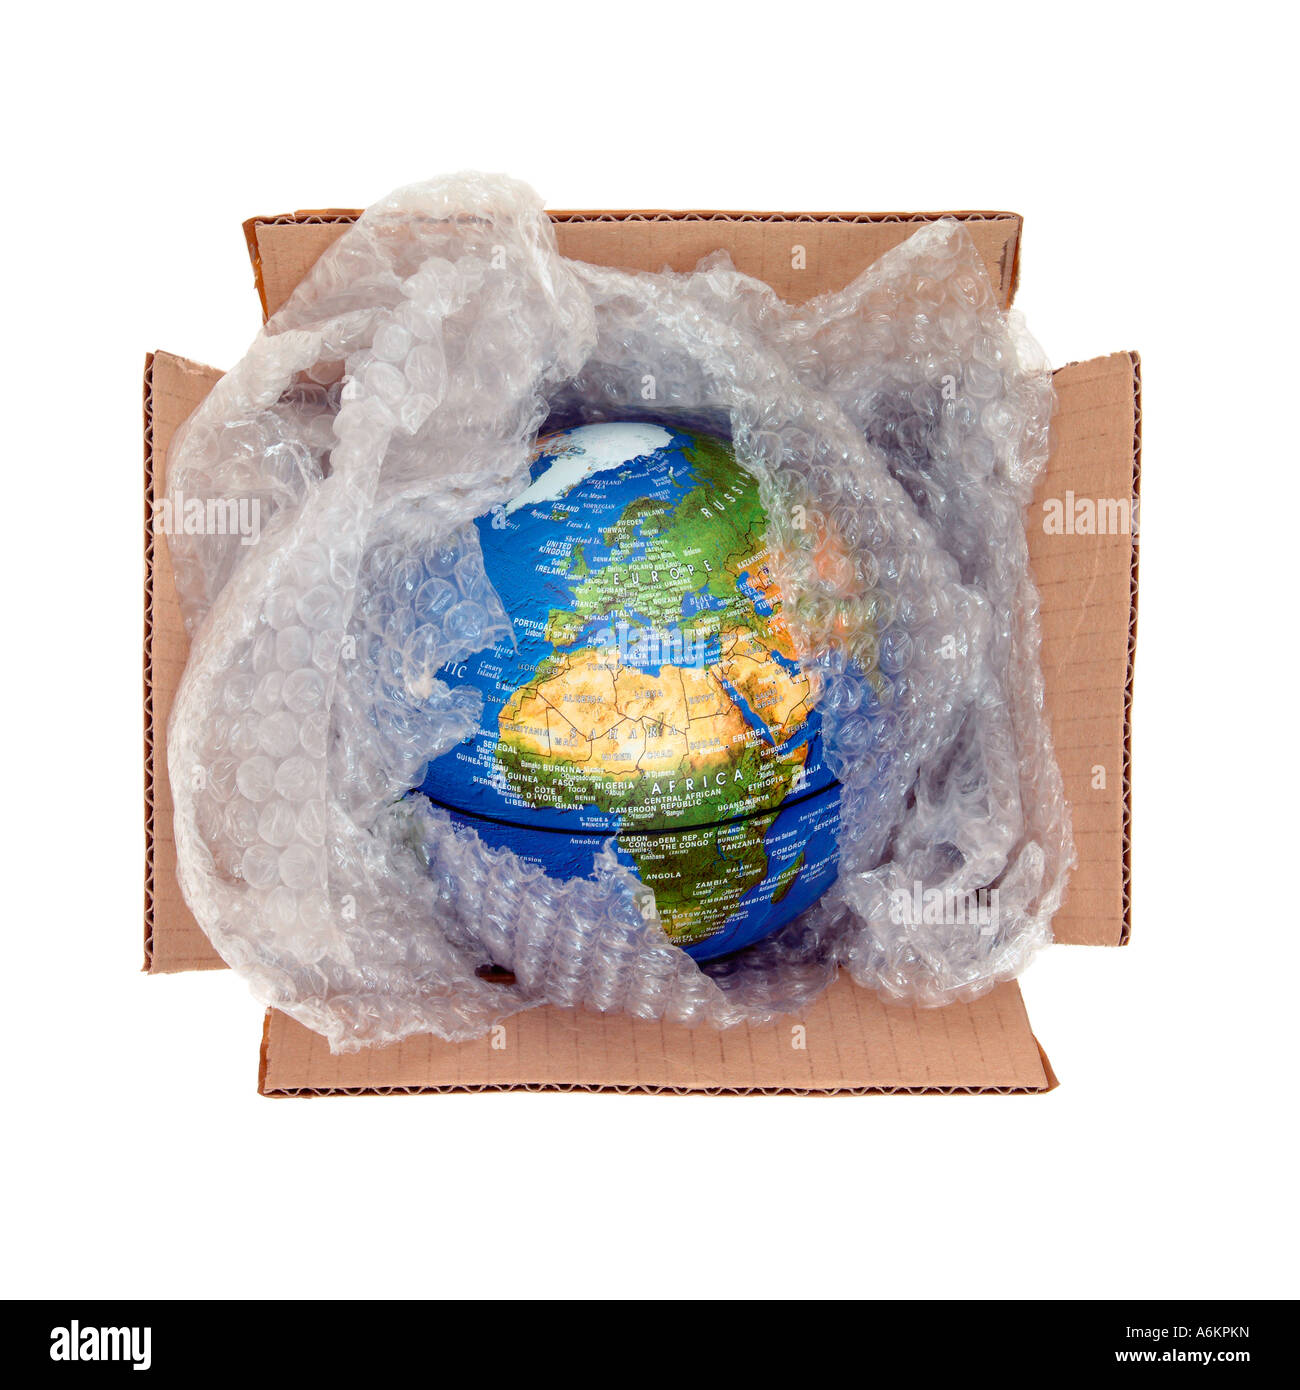 Globus in Luftpolsterfolie in einem Karton verpackt Stockfotografie - Alamy